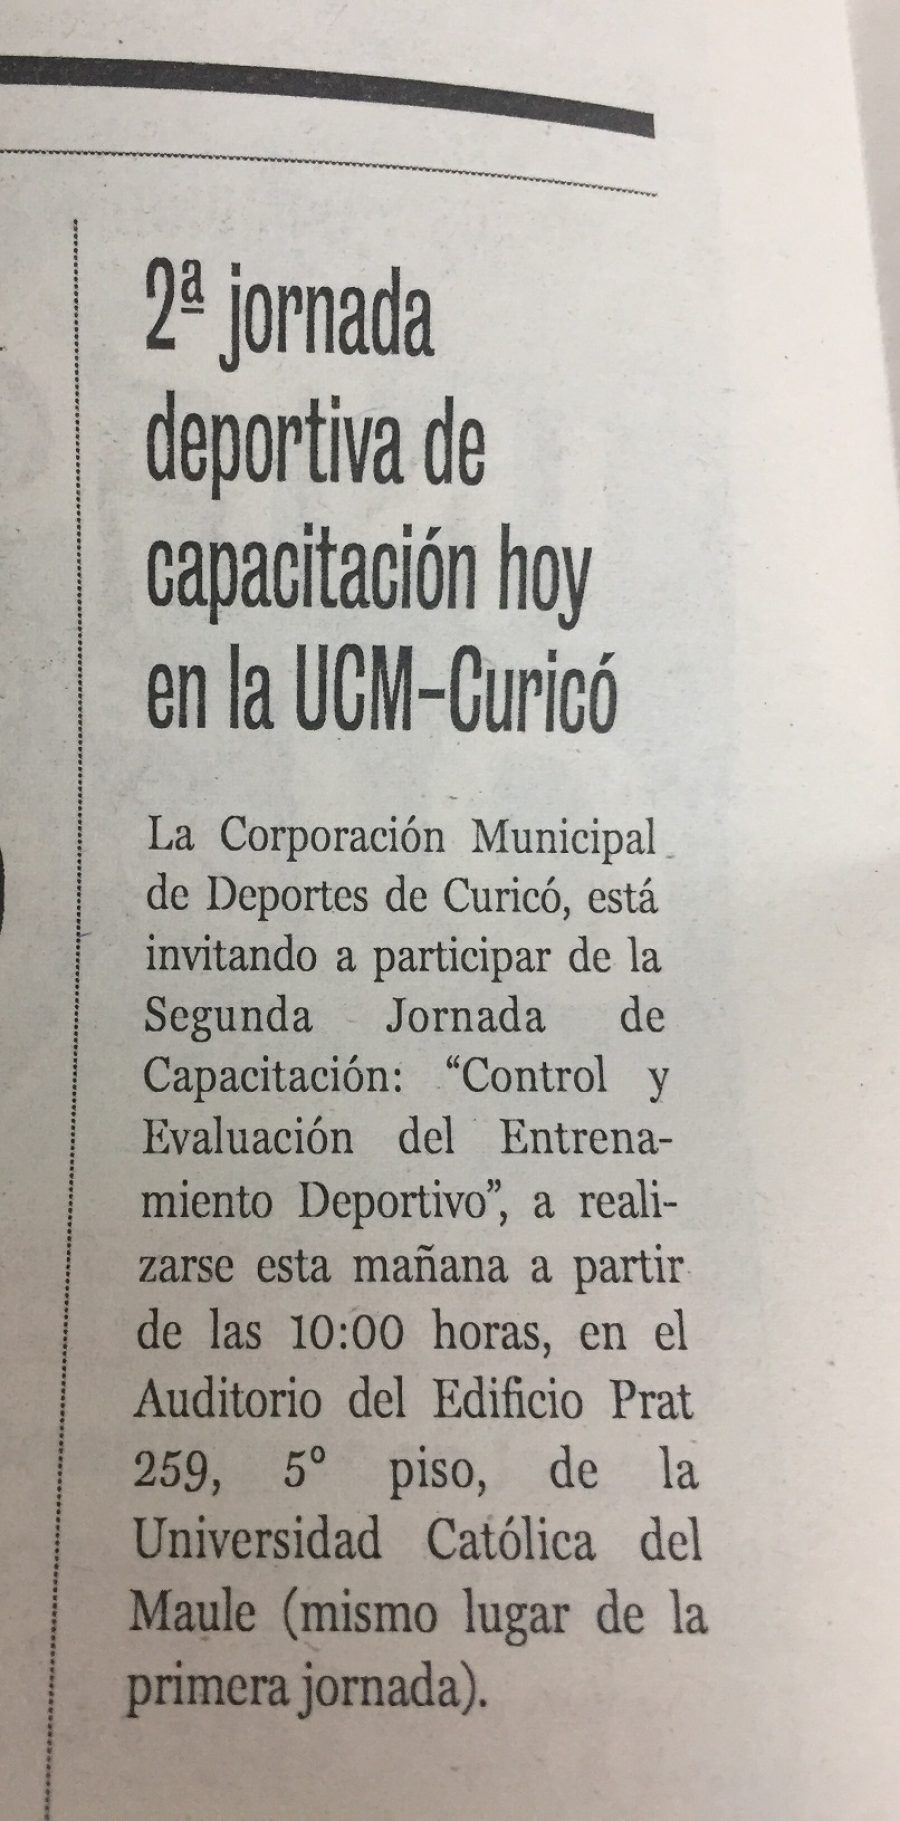 01 de junio en Diario La Prensa: “2° jornada deportiva de capacitación hoy en la UCM-Curicó”